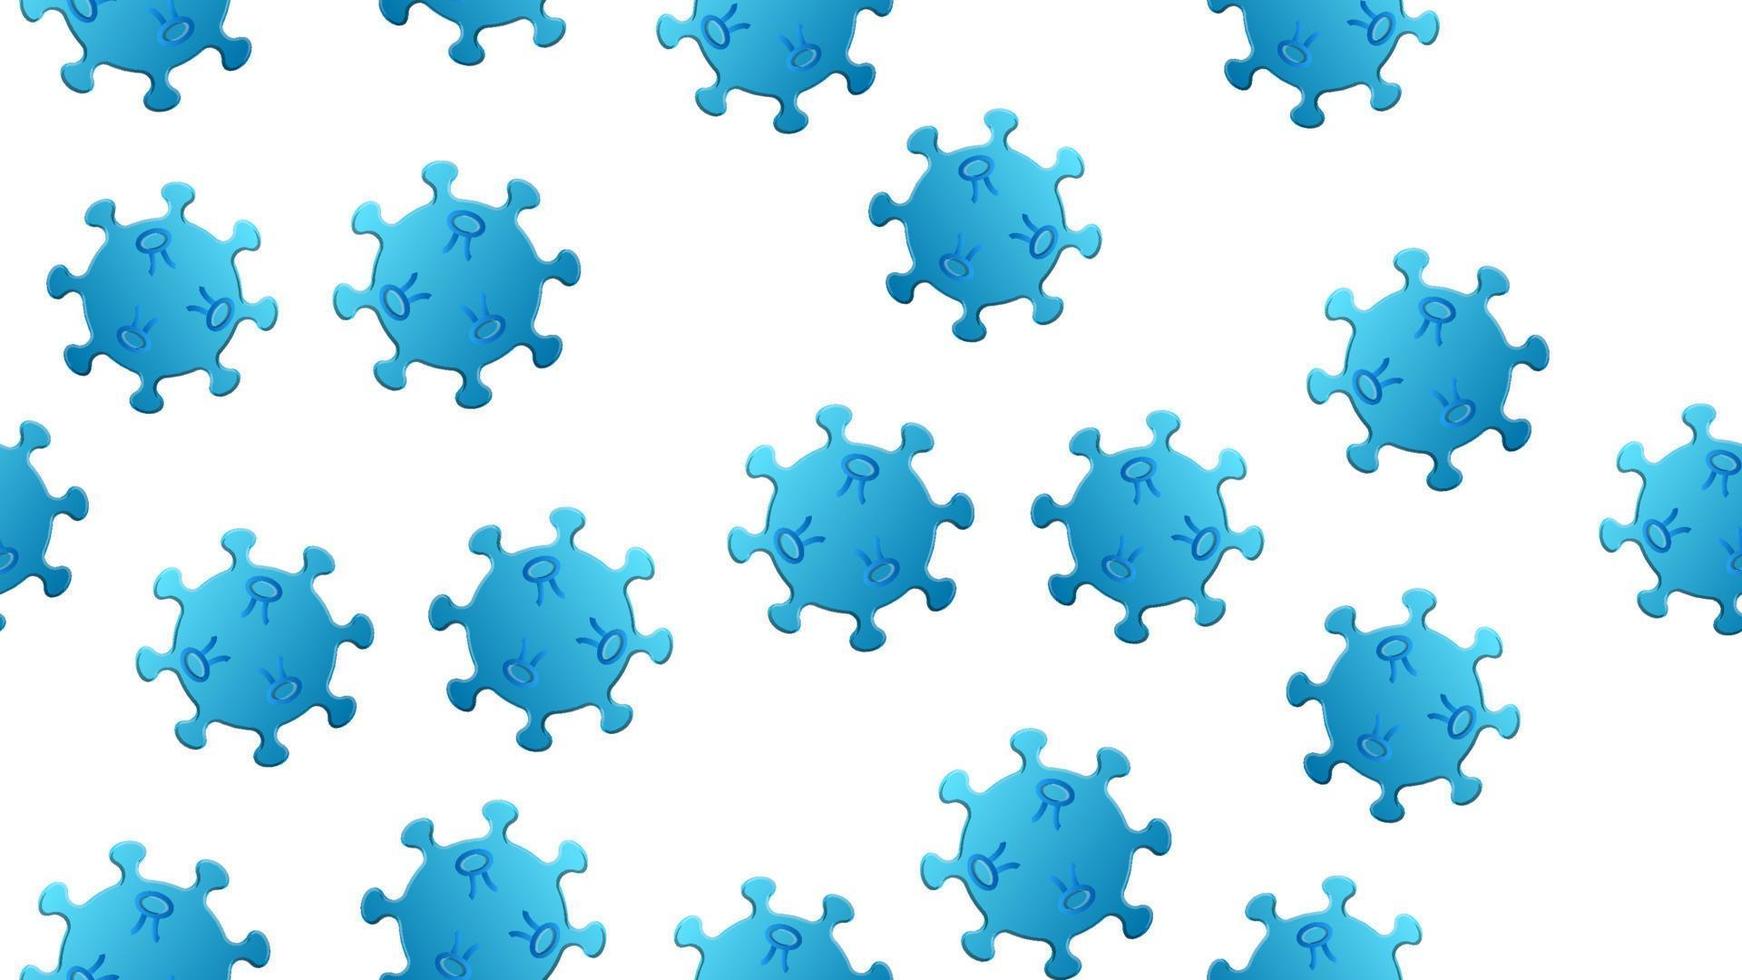 patrón ininterrumpido de virus azules de la bacteria coronavirus enfermedad covid-19 pandemia peligrosa textura infecciosa sobre un fondo blanco vector